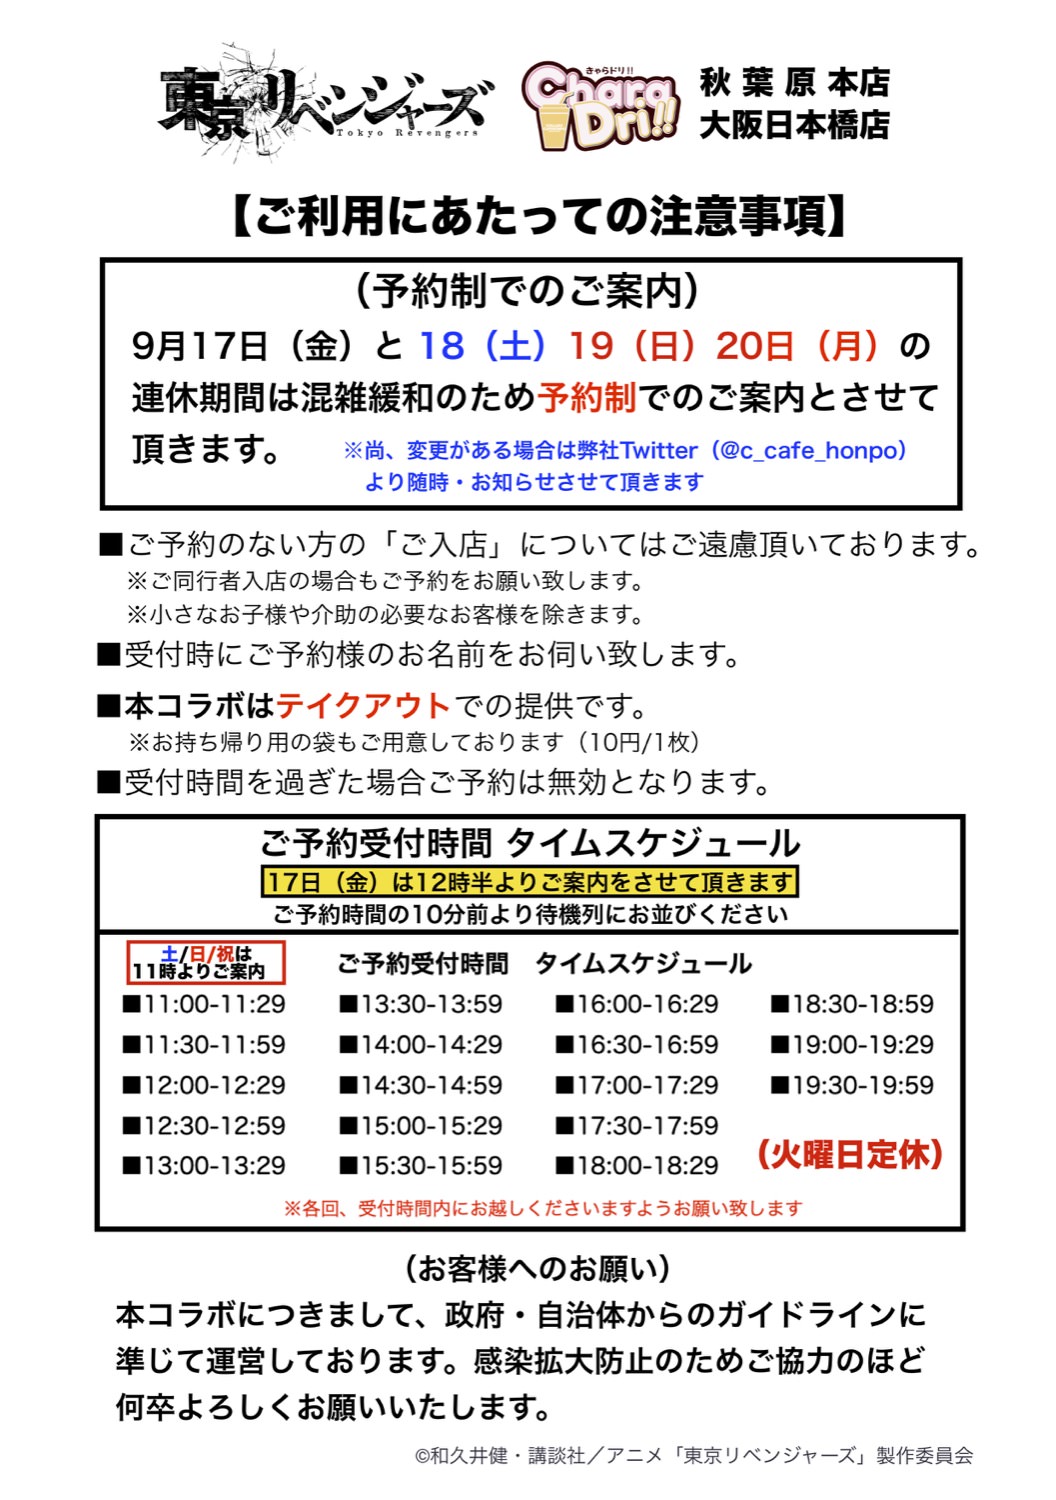 東京リベンジャーズ × きゃらドリ 東京・大阪 9月17日よりコラボ開催!